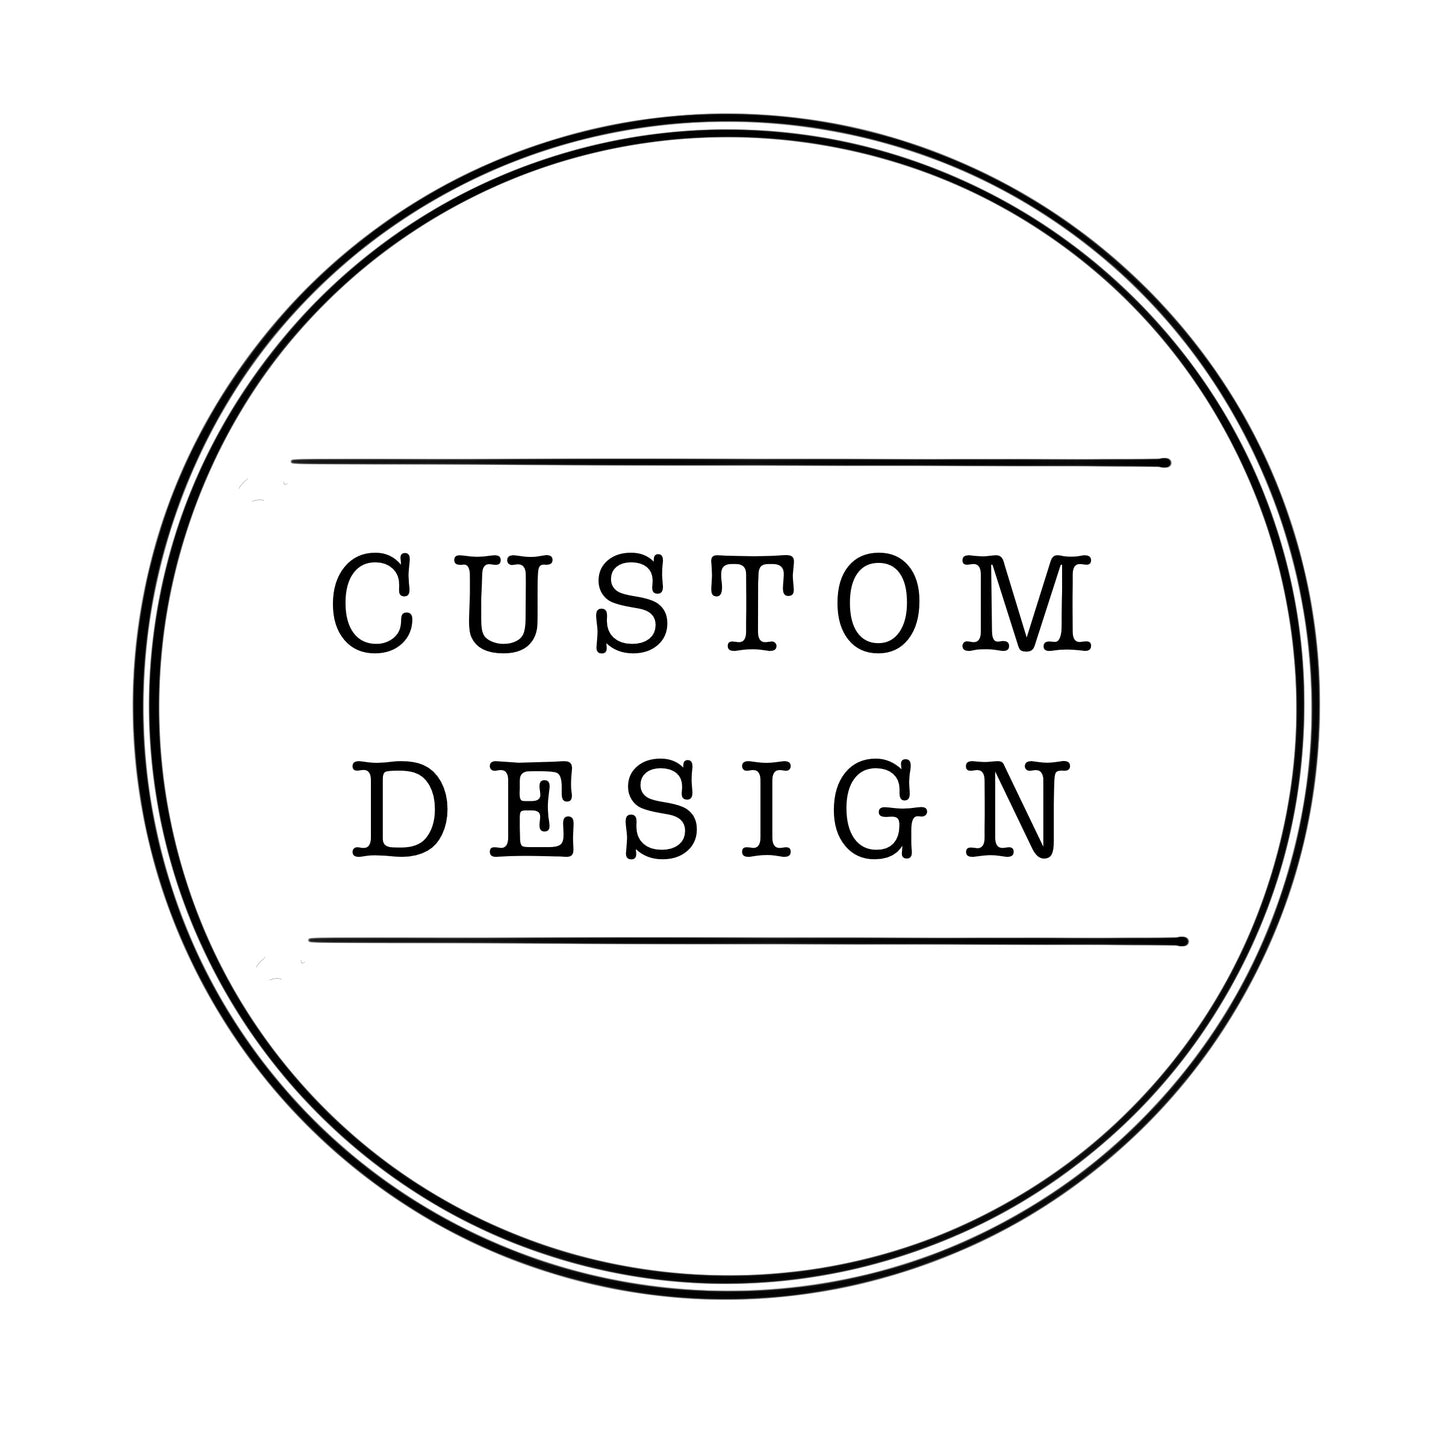 Custom Design for Christian